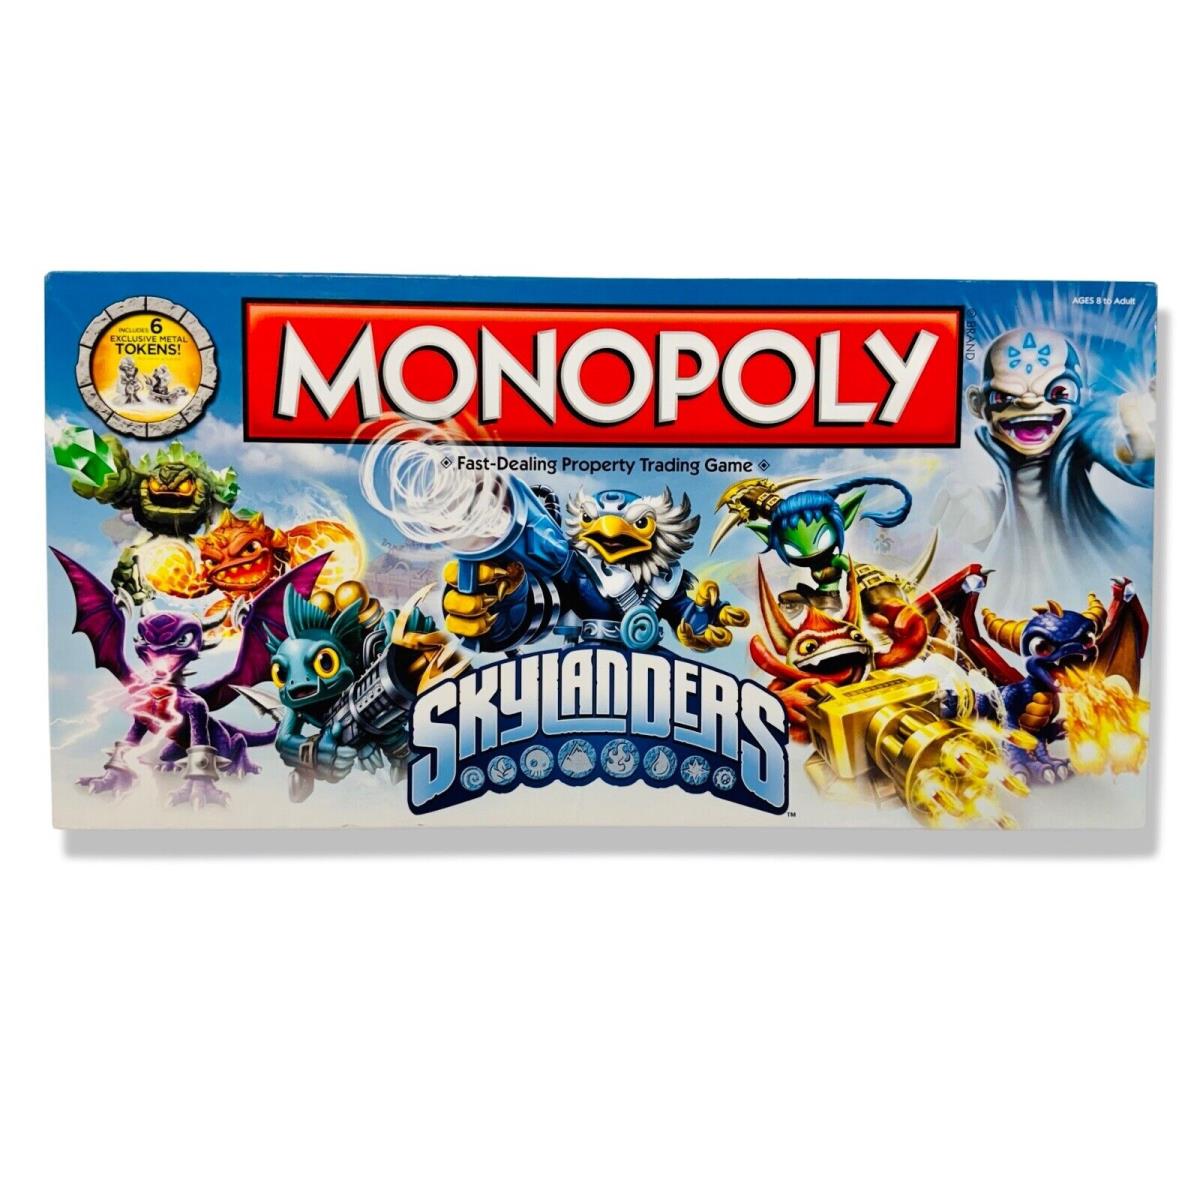 2013 Skylanders Monopoly Usaopoly Board Game Collectors Edition Hasbro